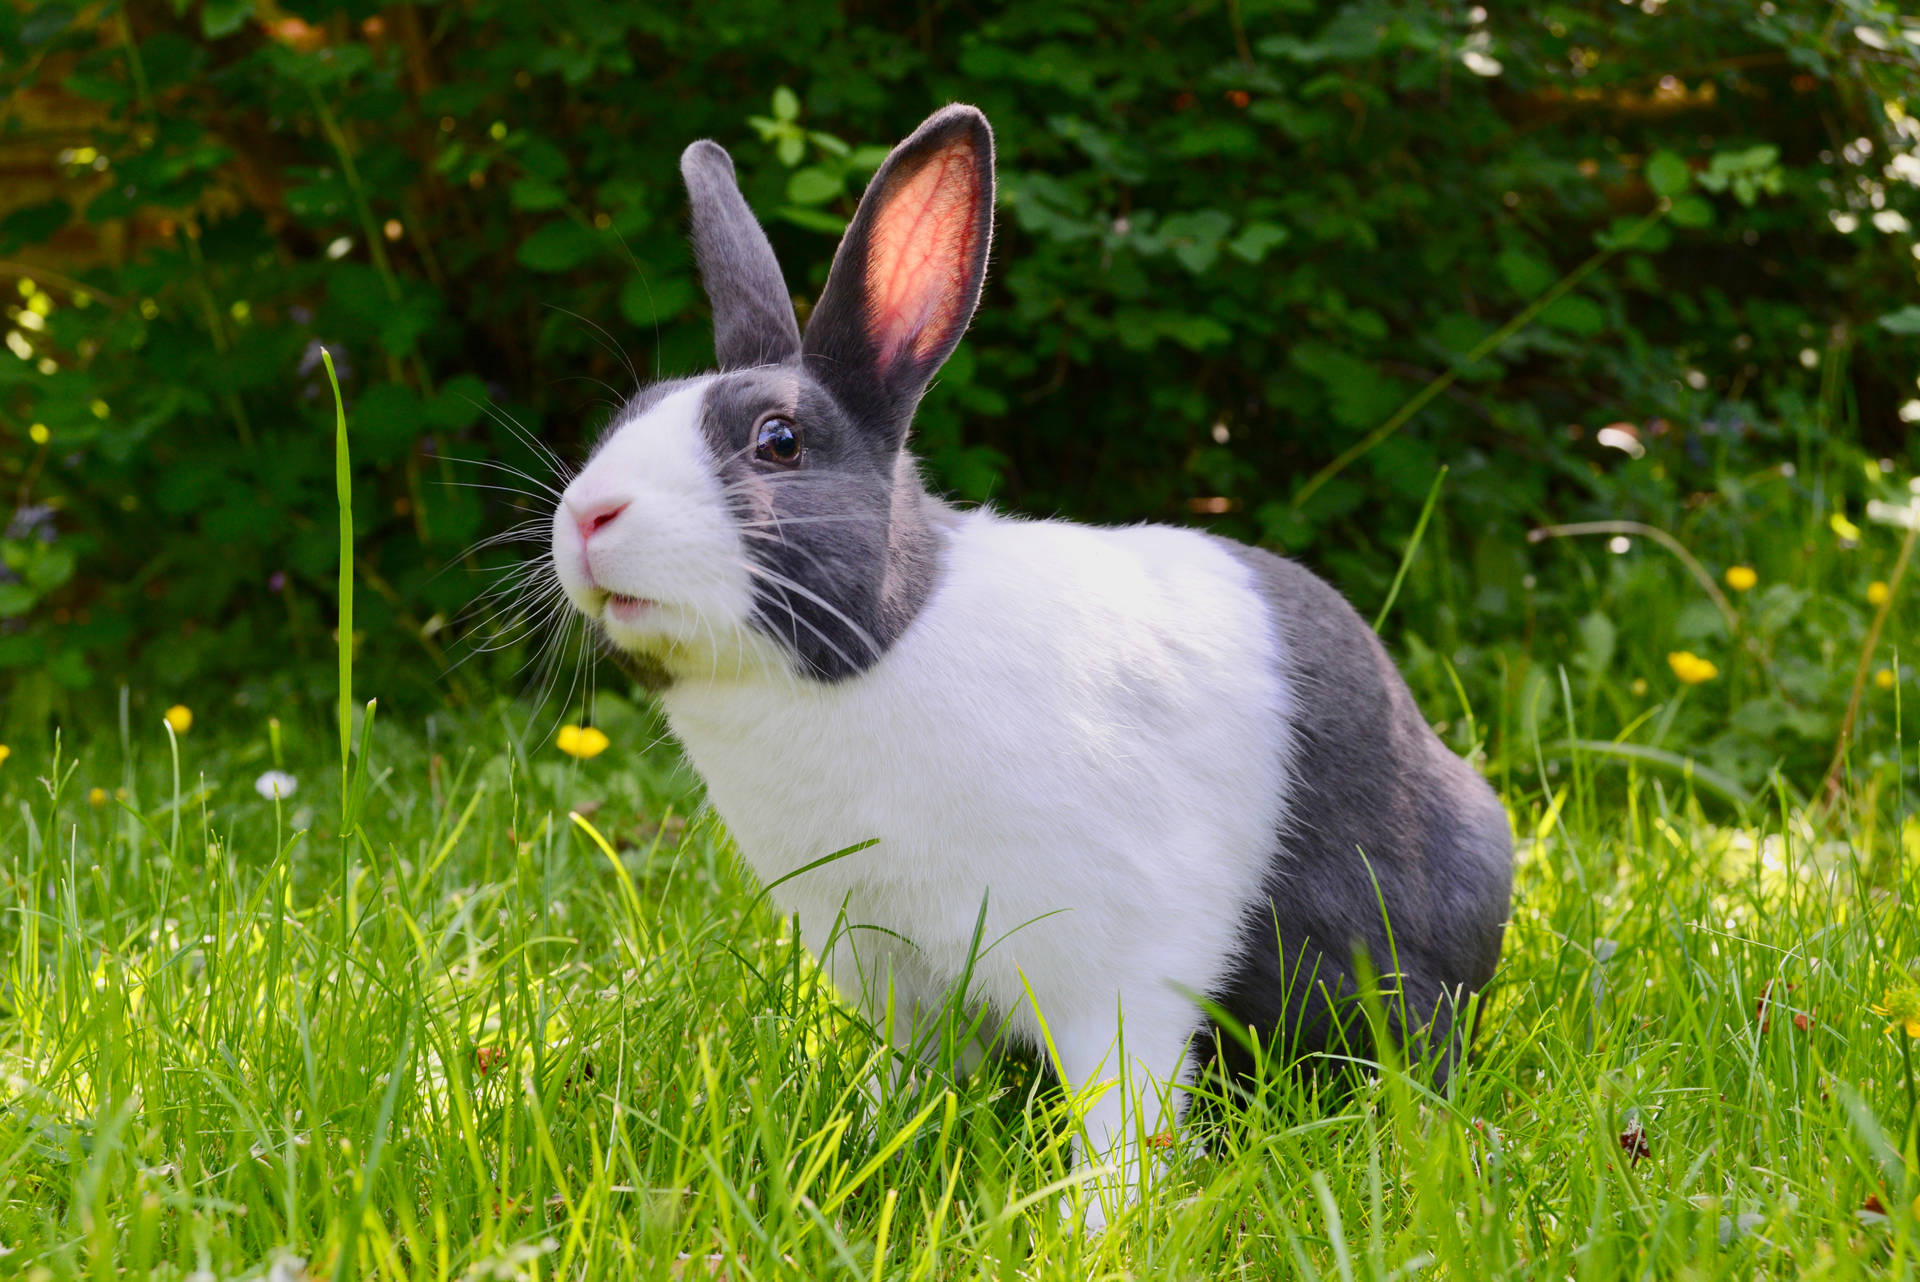 Cute Animal Rabbit In Garden Background